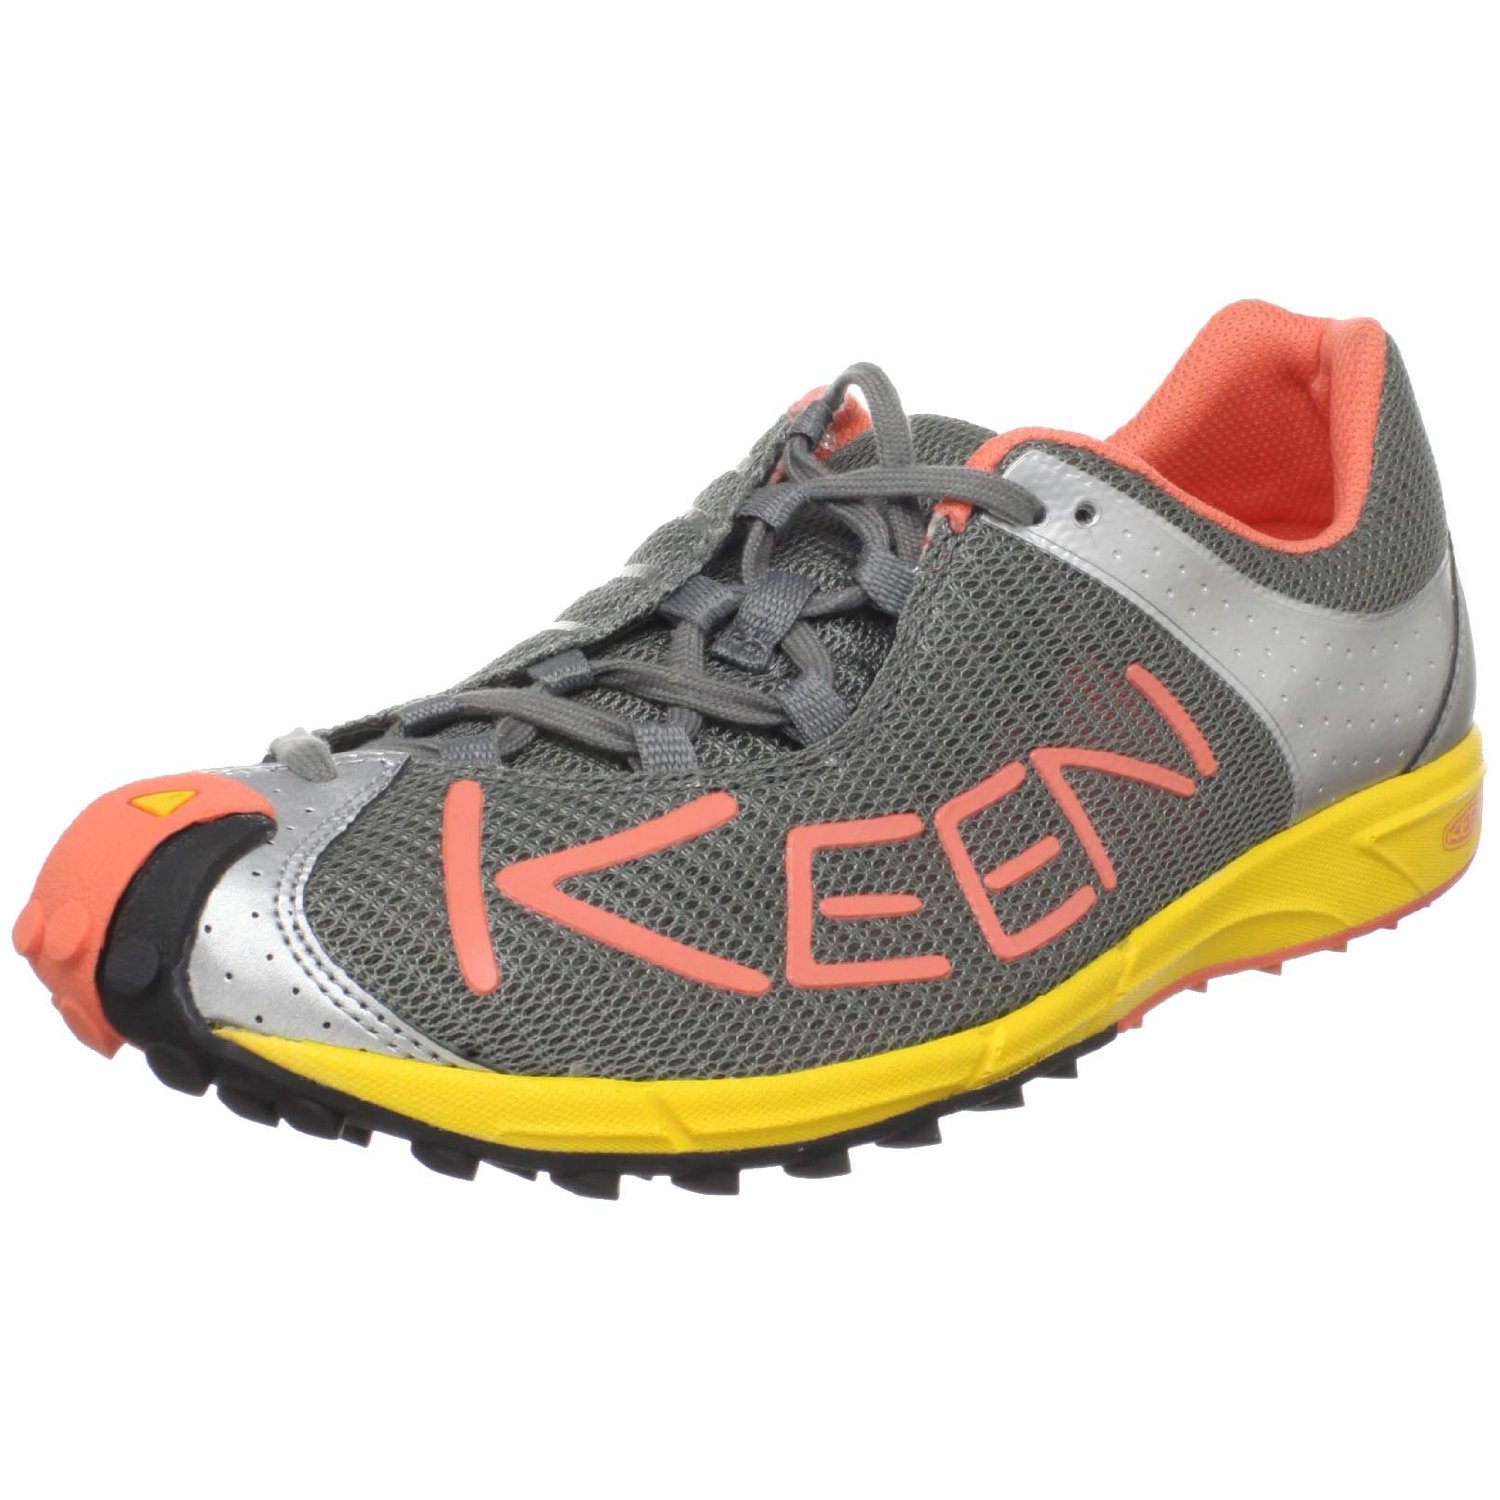 keen-gargoyleliving-coral-keen-womens-a86-tr-trail-running-shoe ...